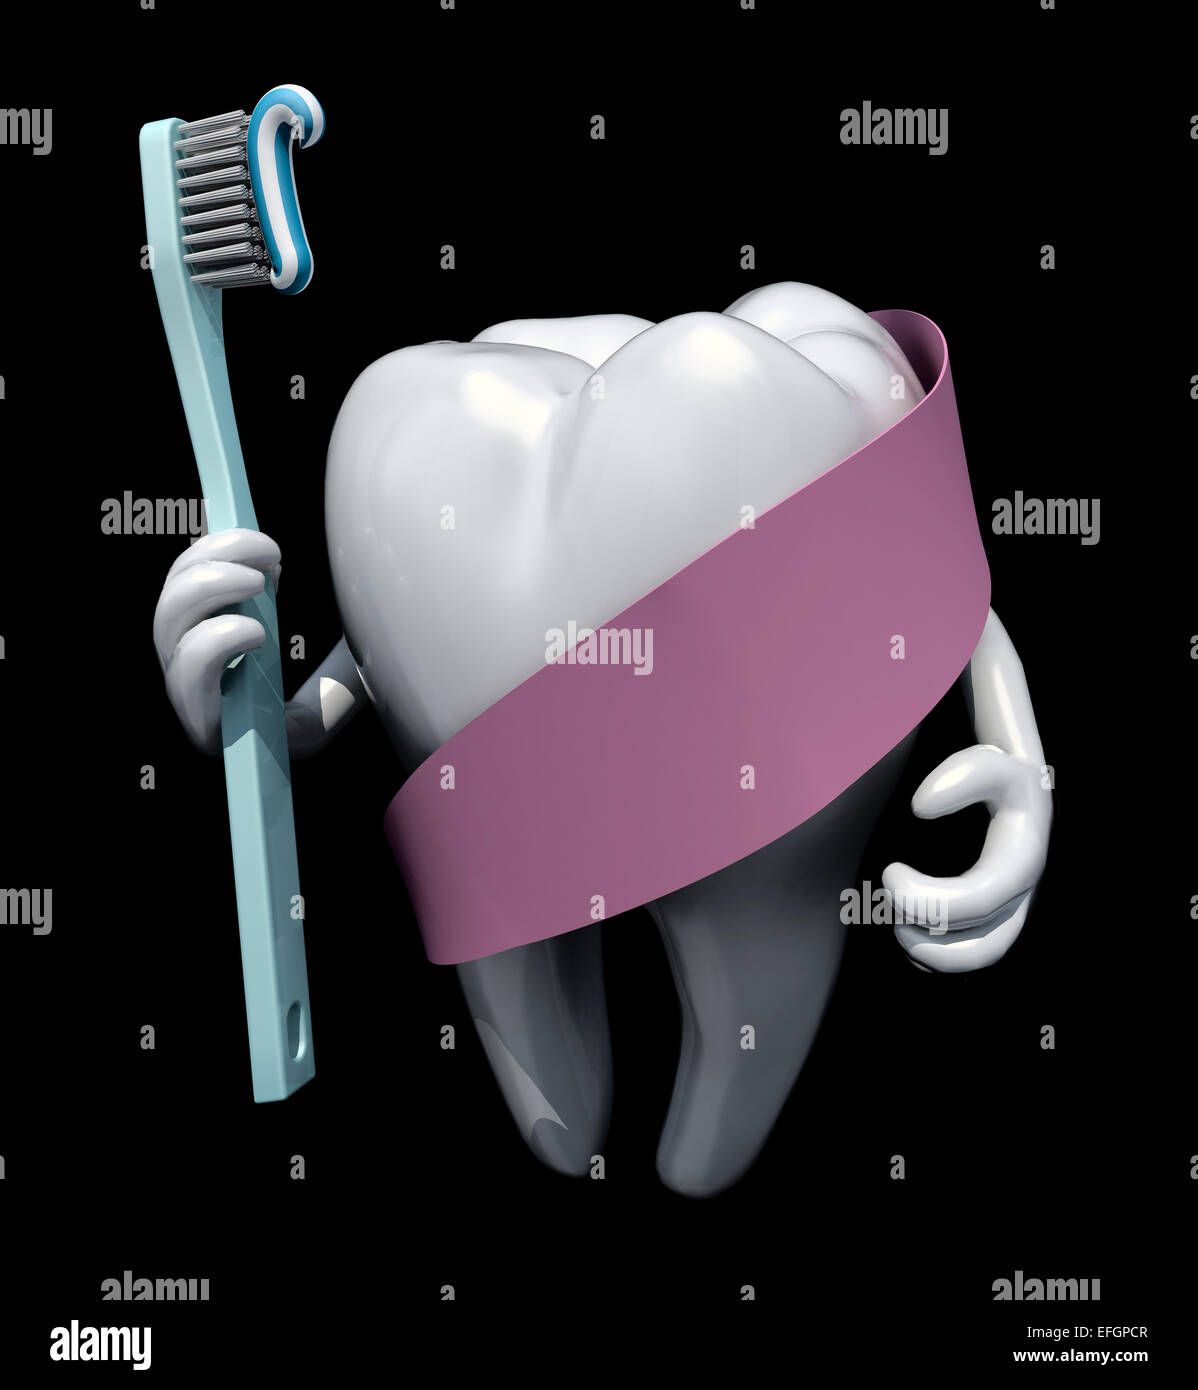 Une molaire en armes et brosse à dents en main, protégé par du ruban rose, isolated on black 3d illustration Banque D'Images